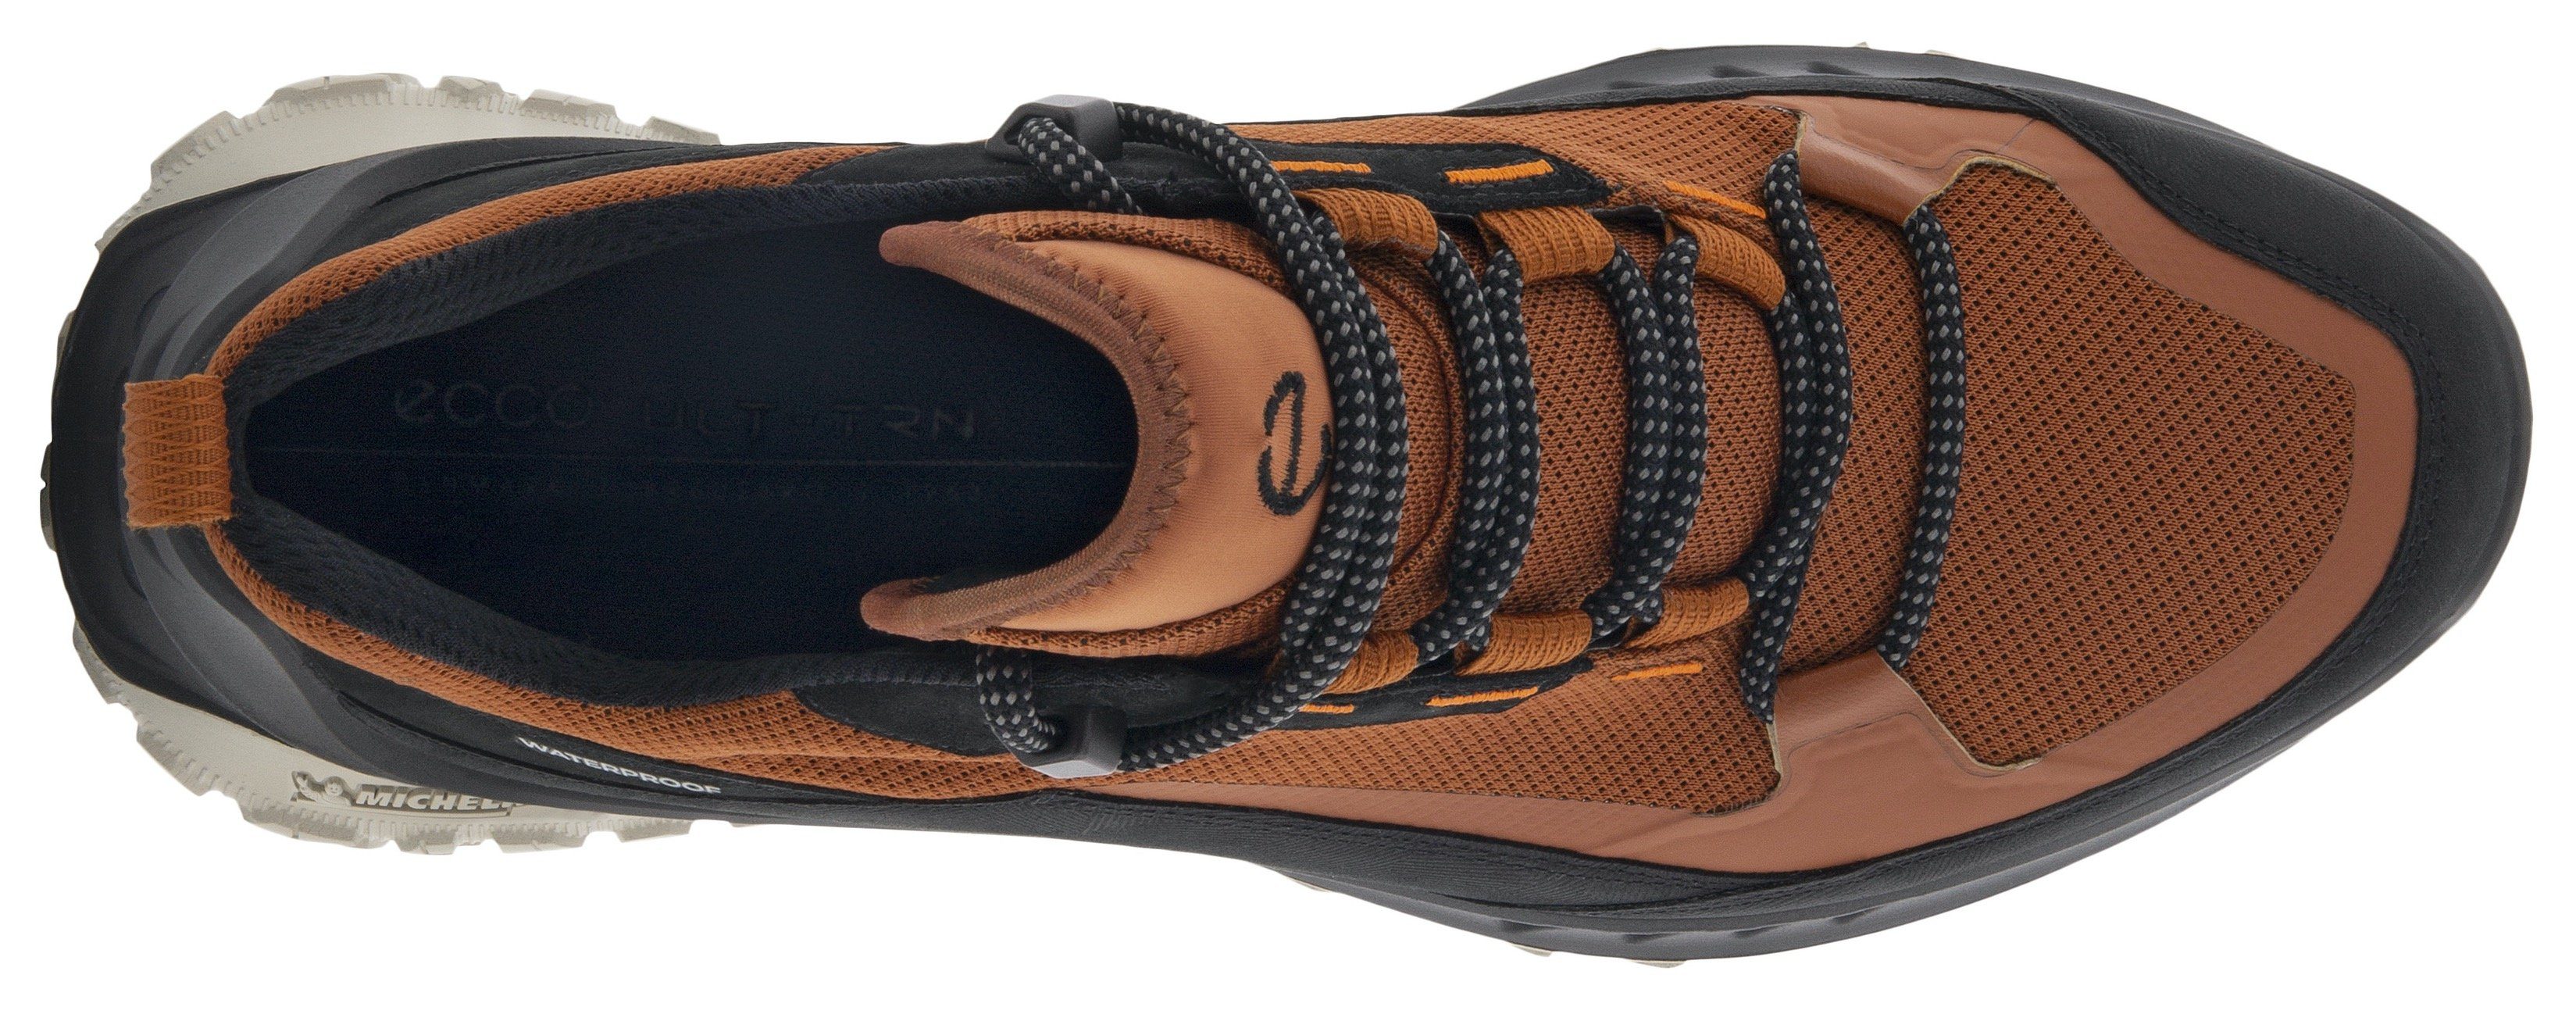 Laufsohle M Sneaker Michelin-Technologie cognac-schwarz mit ULT-TRN Ecco sportive